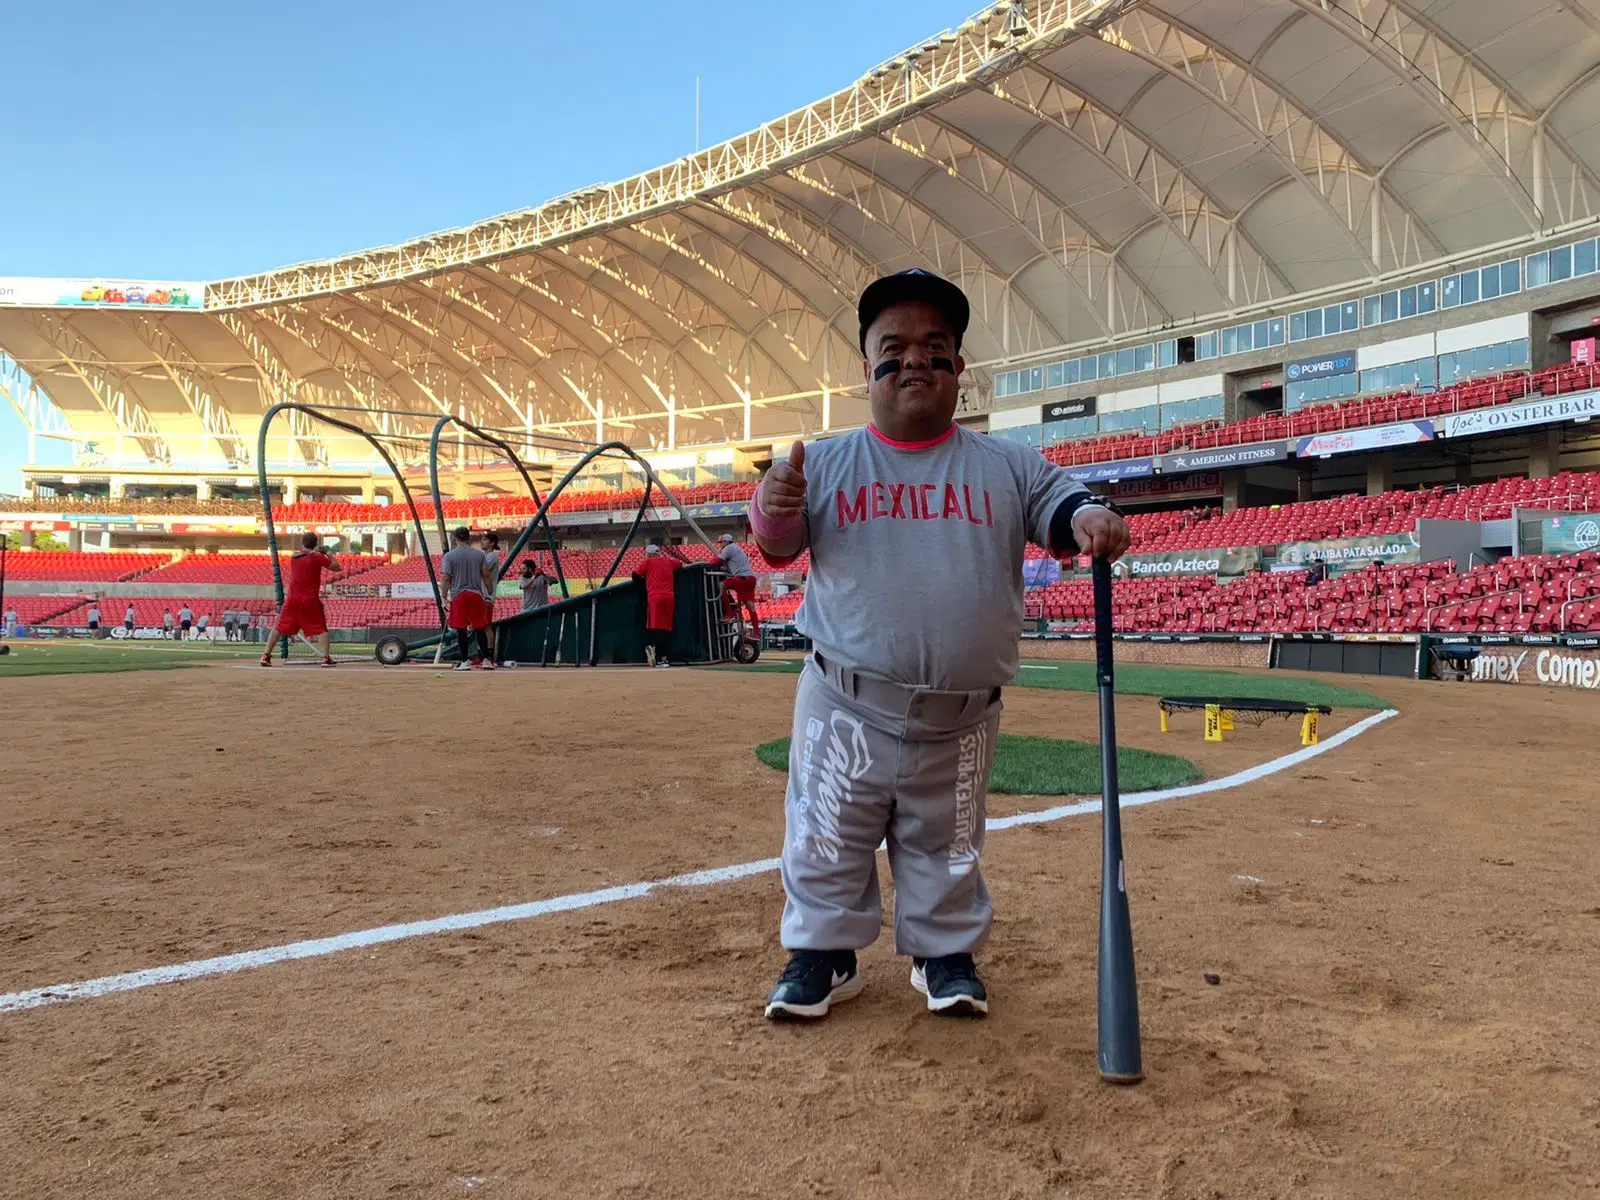 “Chevale”, Bat Boy de mucha trayectoria en el beisbol mexicano (4)